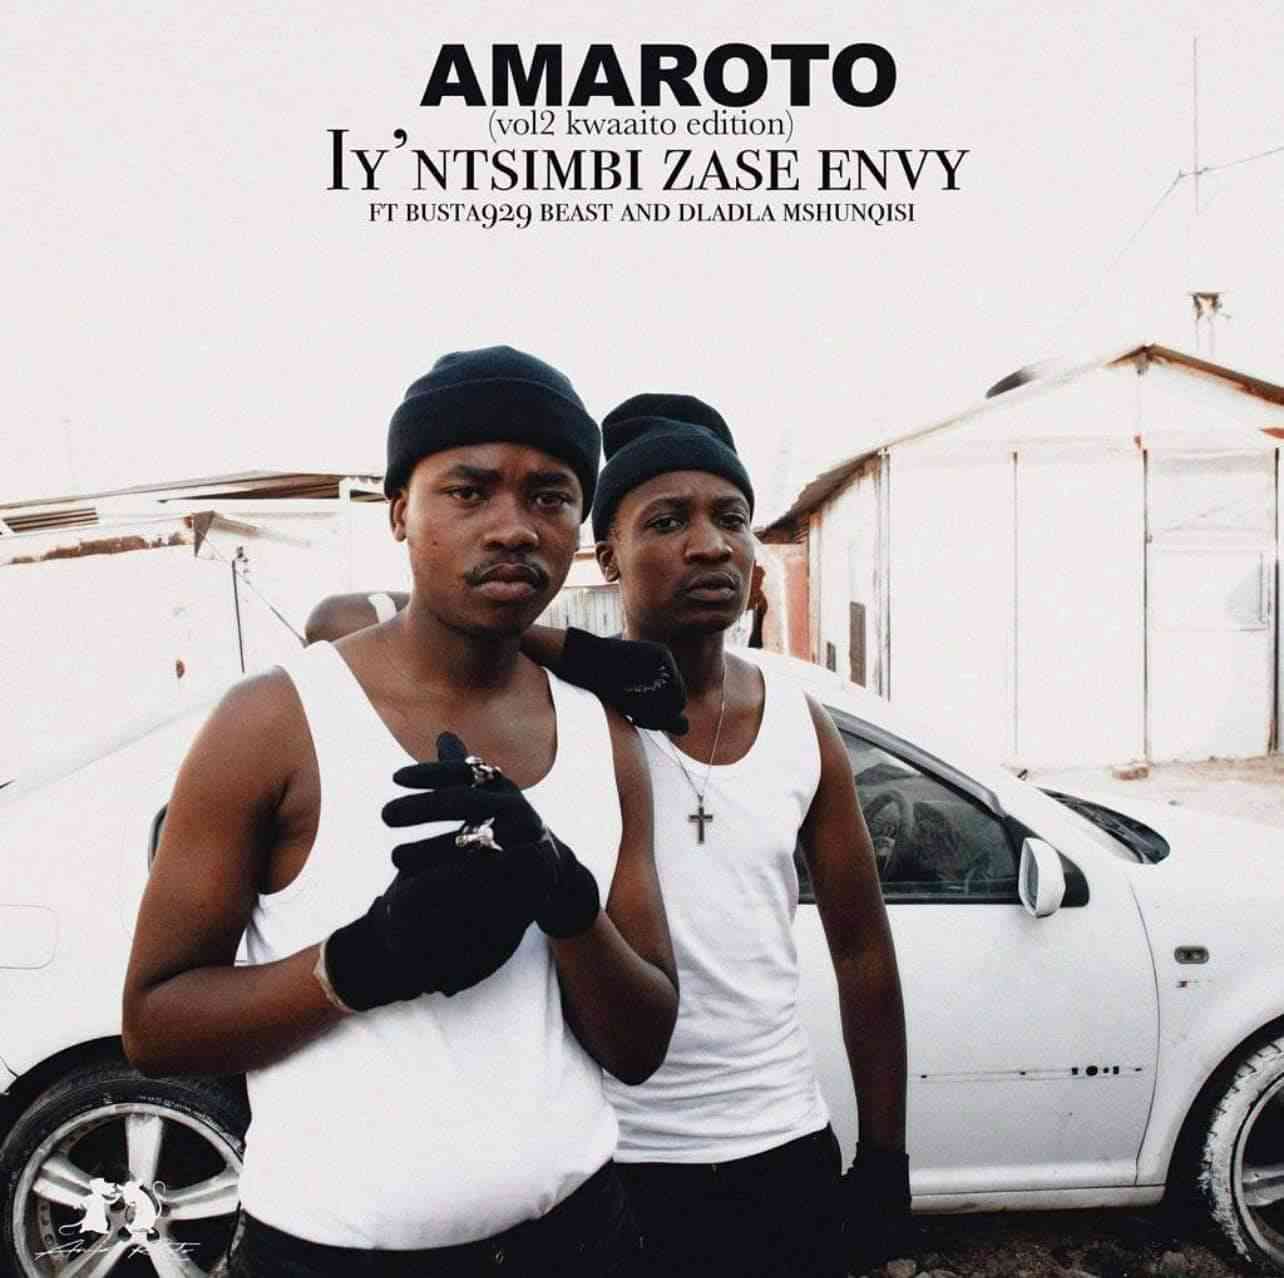 Reece Madlisa & Zuma (Amaroto) Iy’ntsimbi Zase Envy ft. Busta 929, Beast & Dladla Mshunqisi